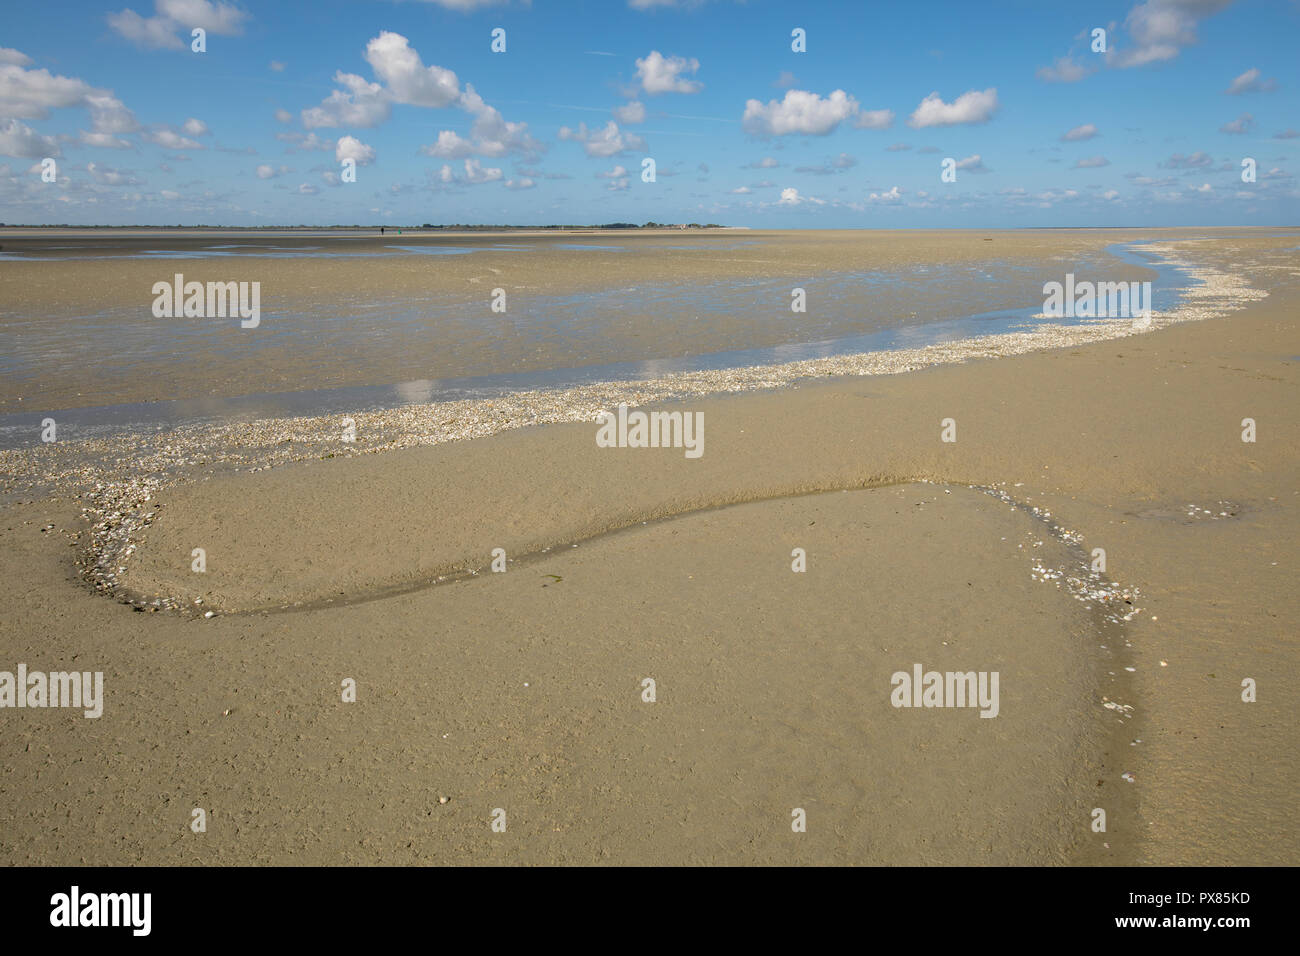 Petit rivière qui coule sur la plage dans la mer, Baie de Somme, Picardie, France Banque D'Images